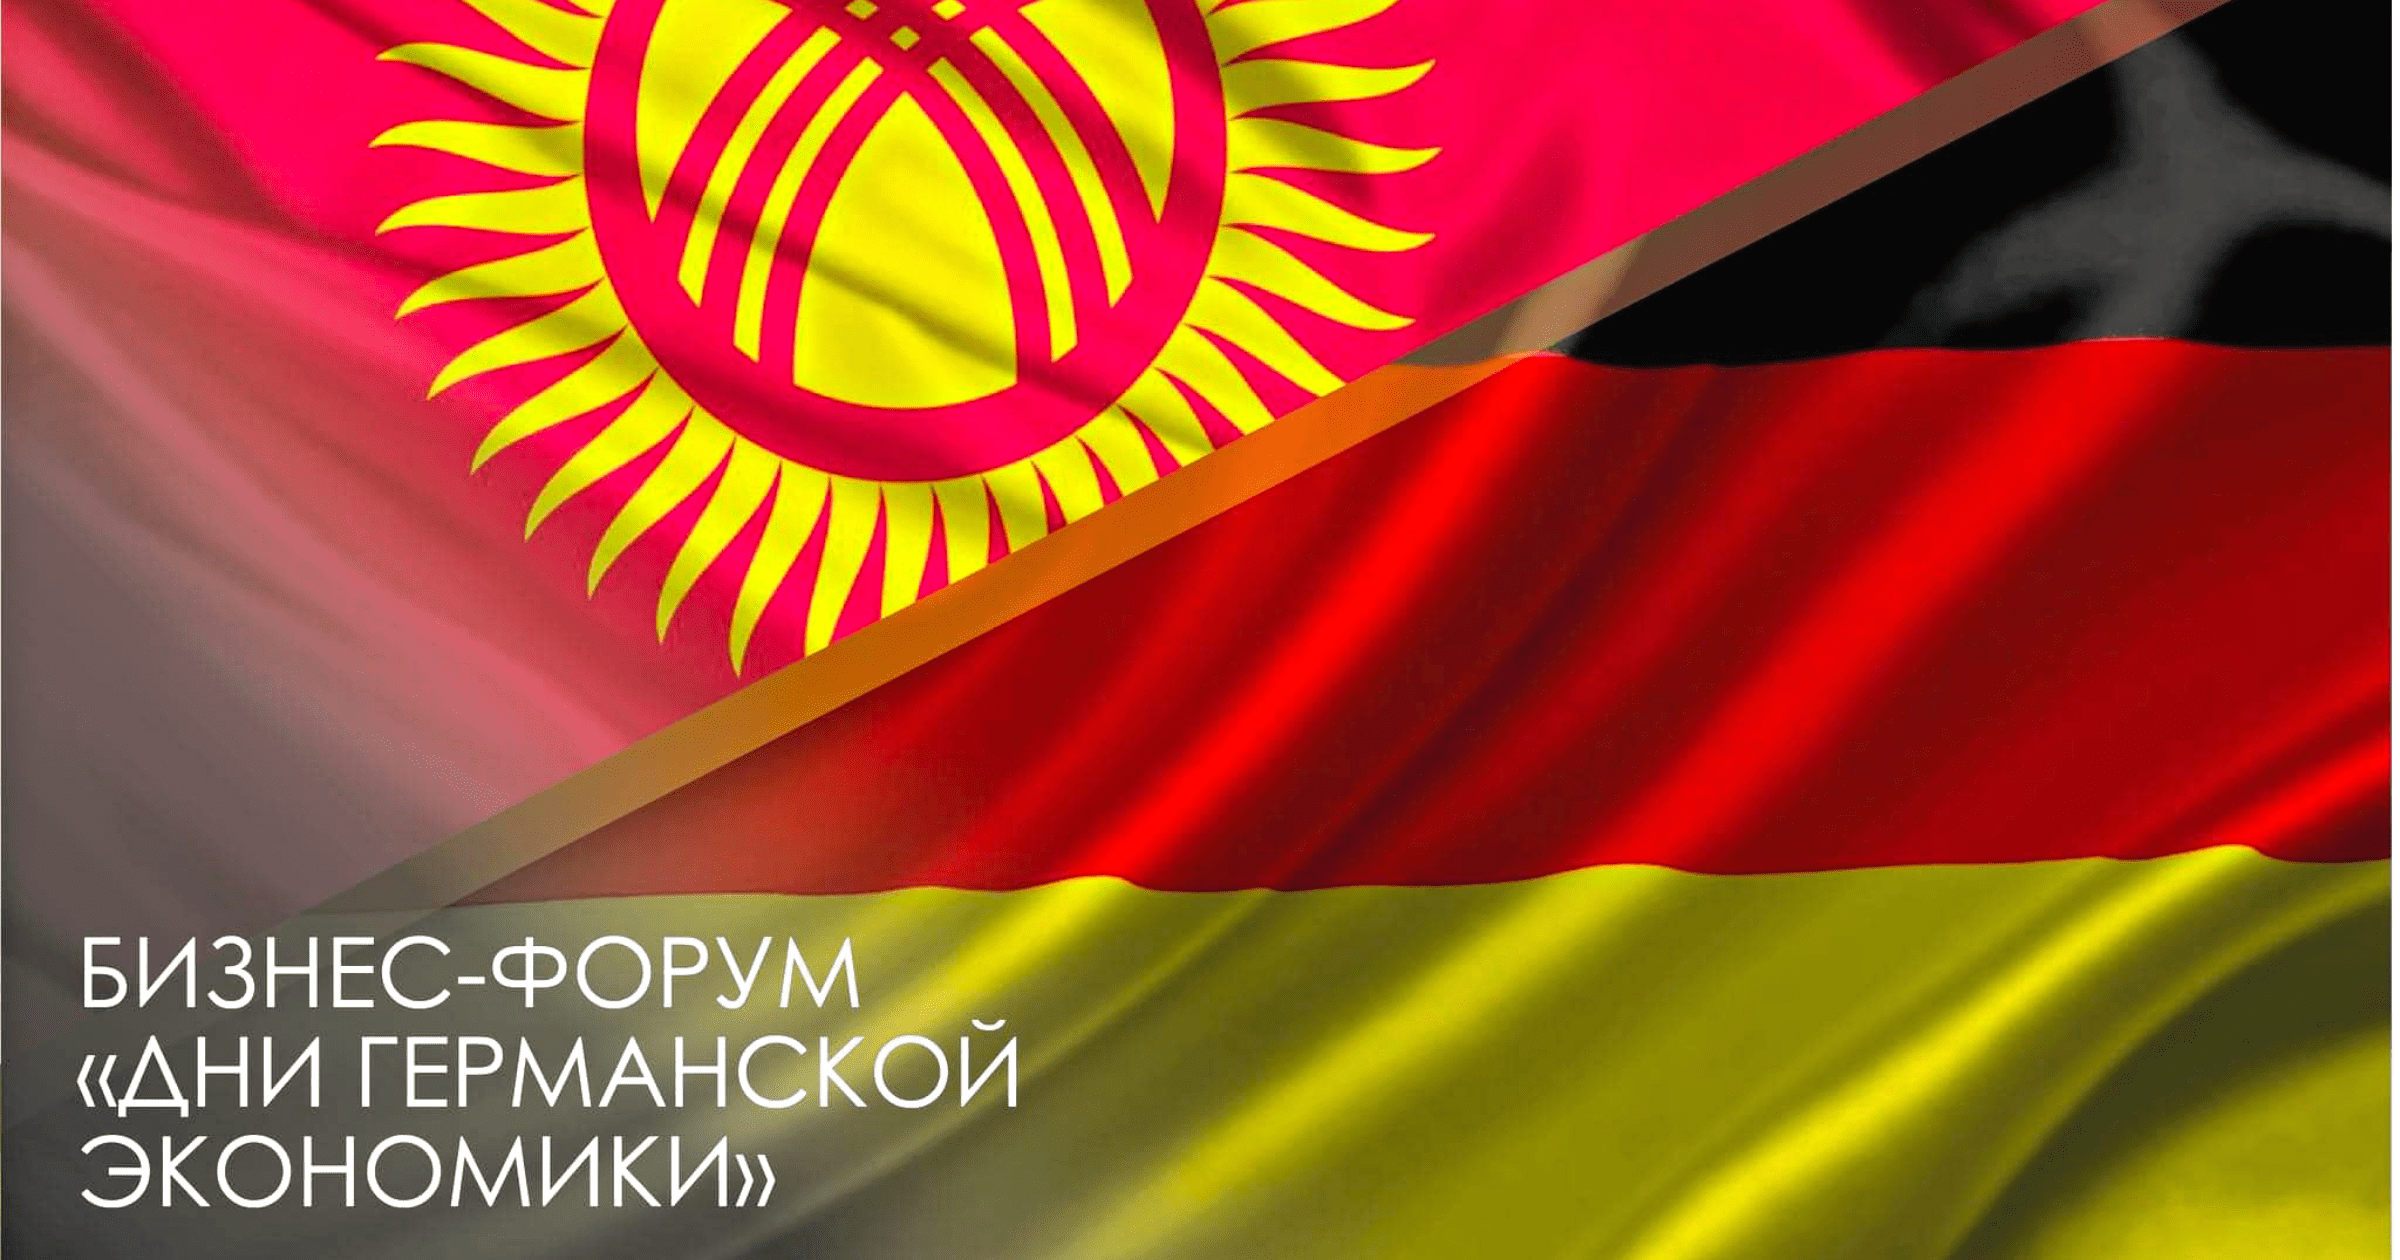 Кыргызско-германский бизнес-форум пройдет 13 июня в Бишкеке